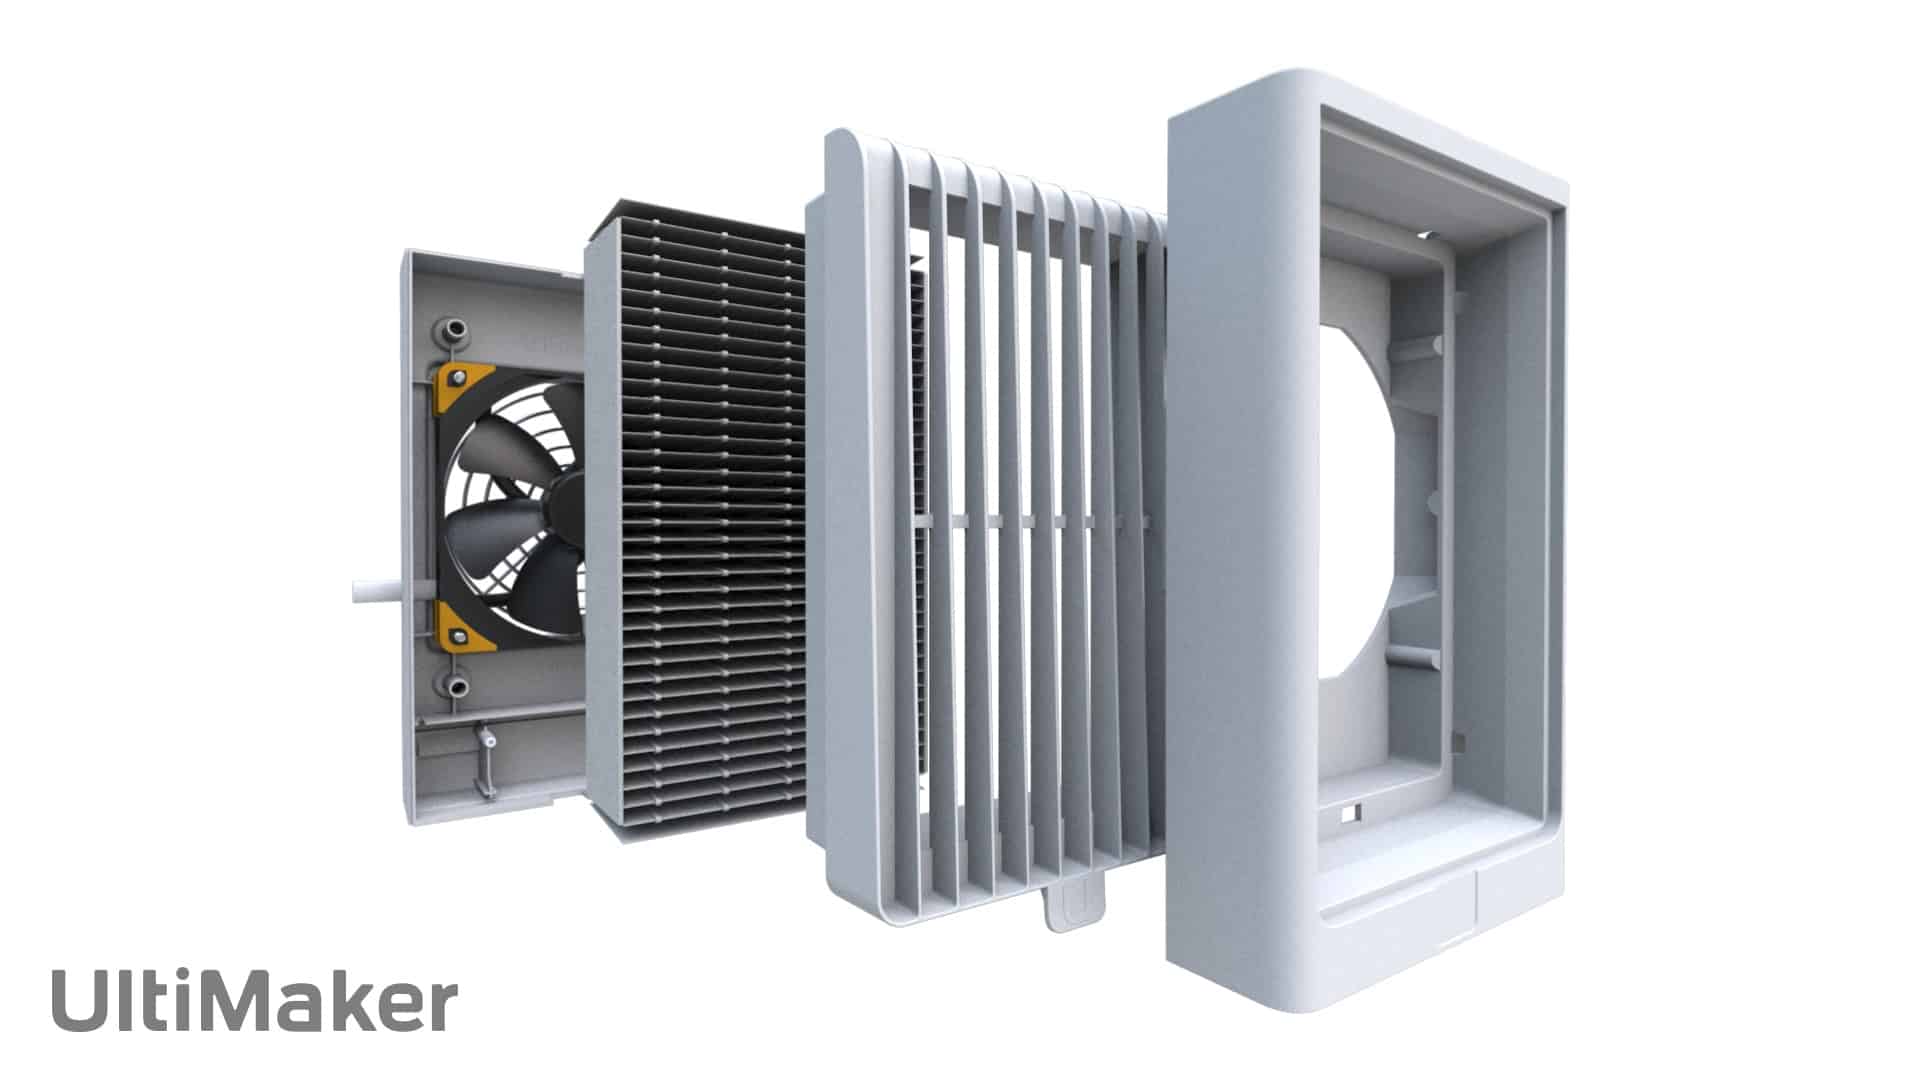 УльтиМейкер S7 – встроенный Air Manager с HEPA фильтром